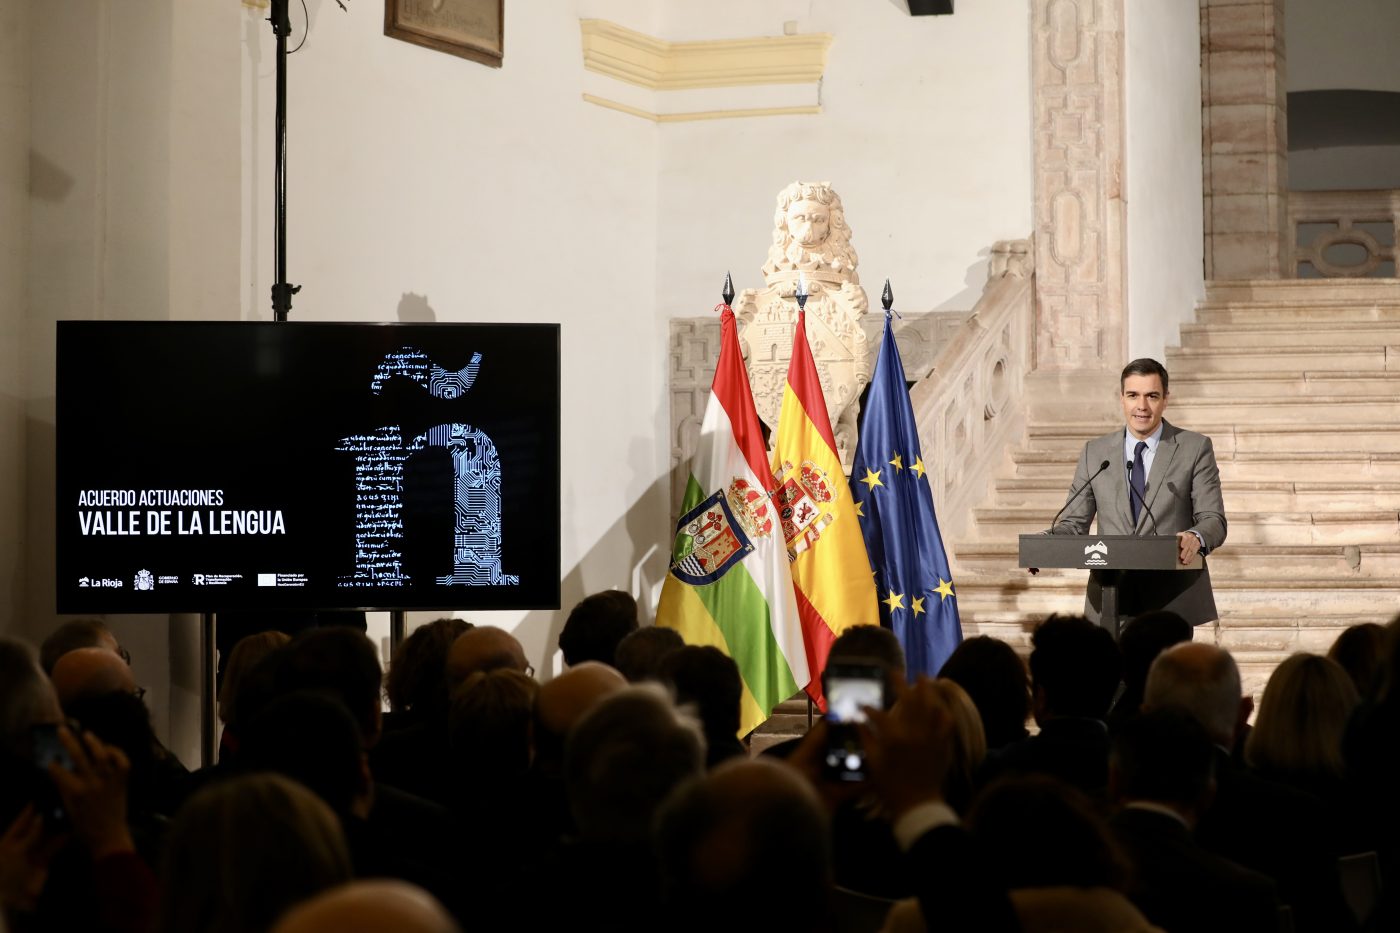 La Rioja pondrá en marcha Centro de Inteligencia de la Nueva Economía de la Lengua con una inversión de 45 millones de euros 2